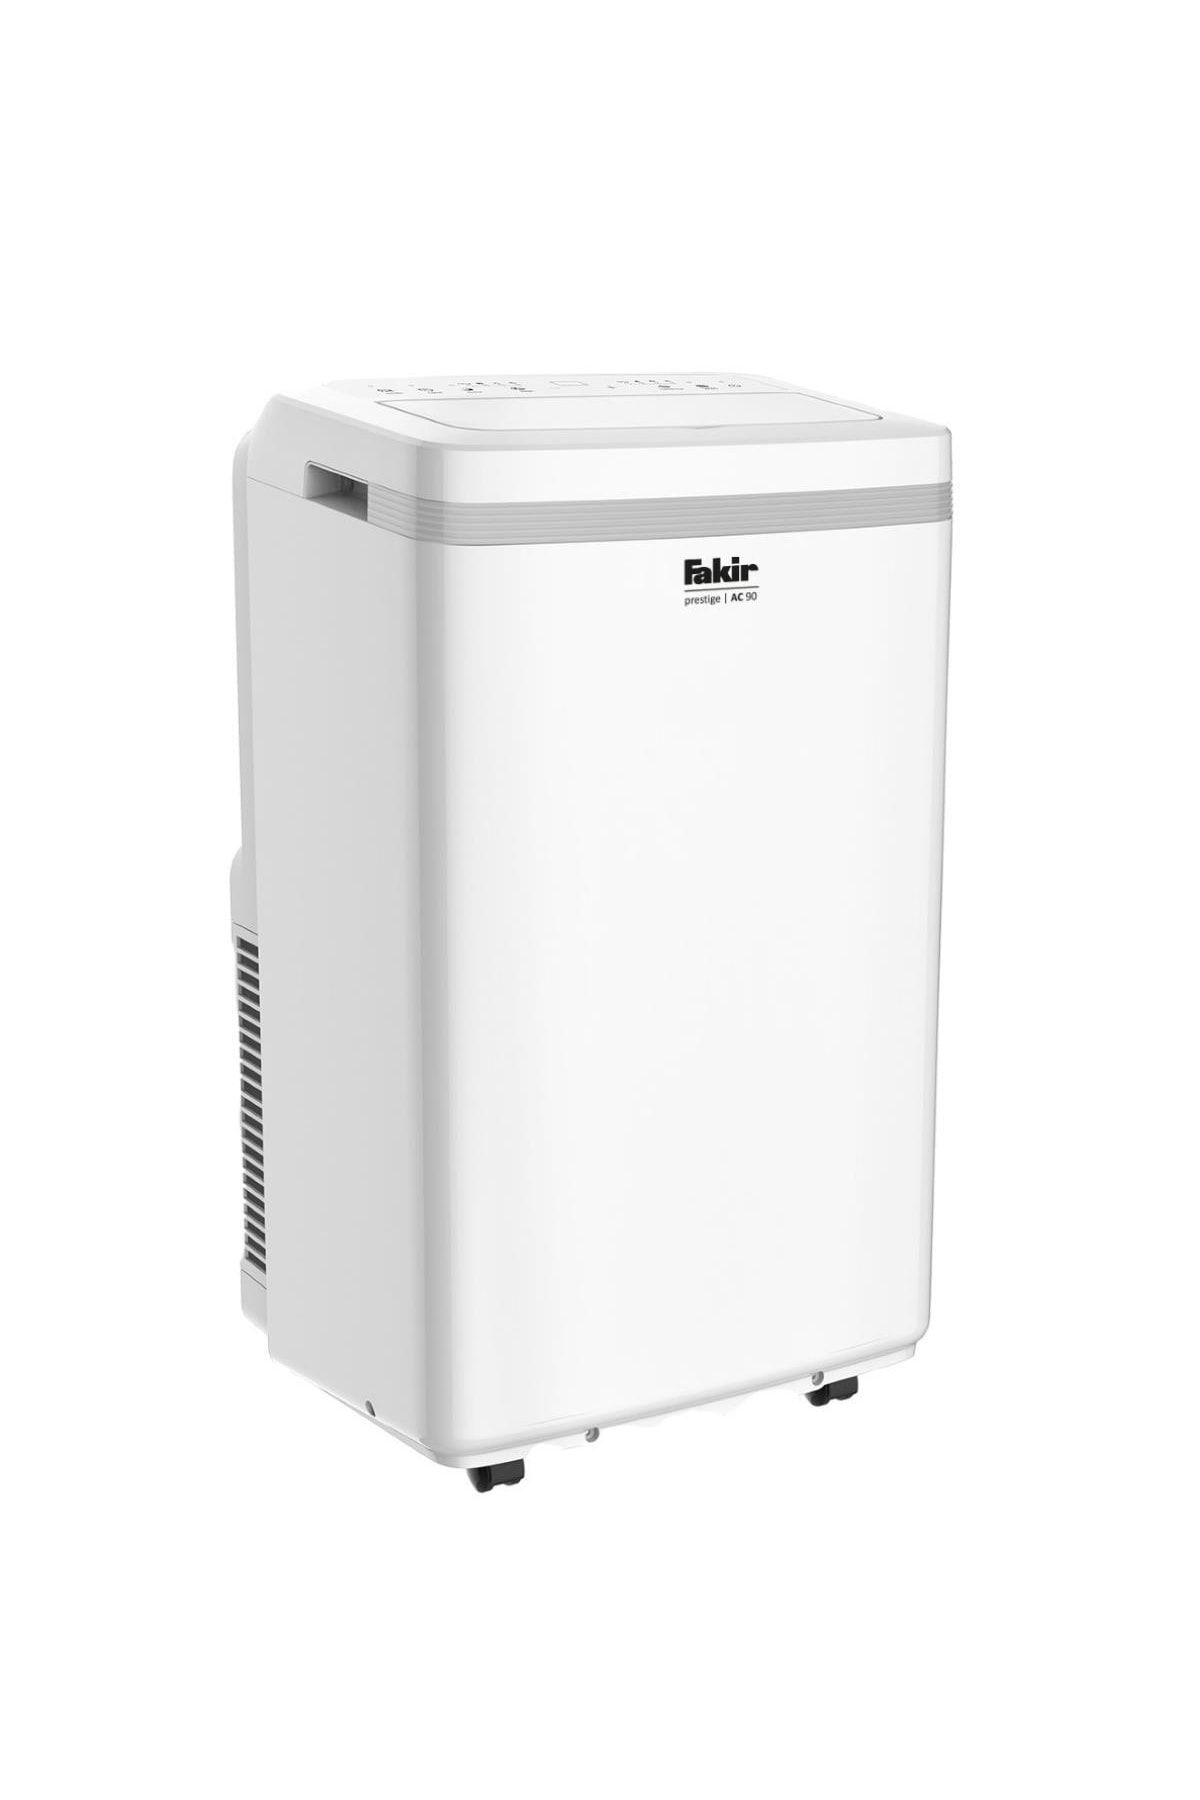 Fakir Prestige Ac 90 Air Conditioner